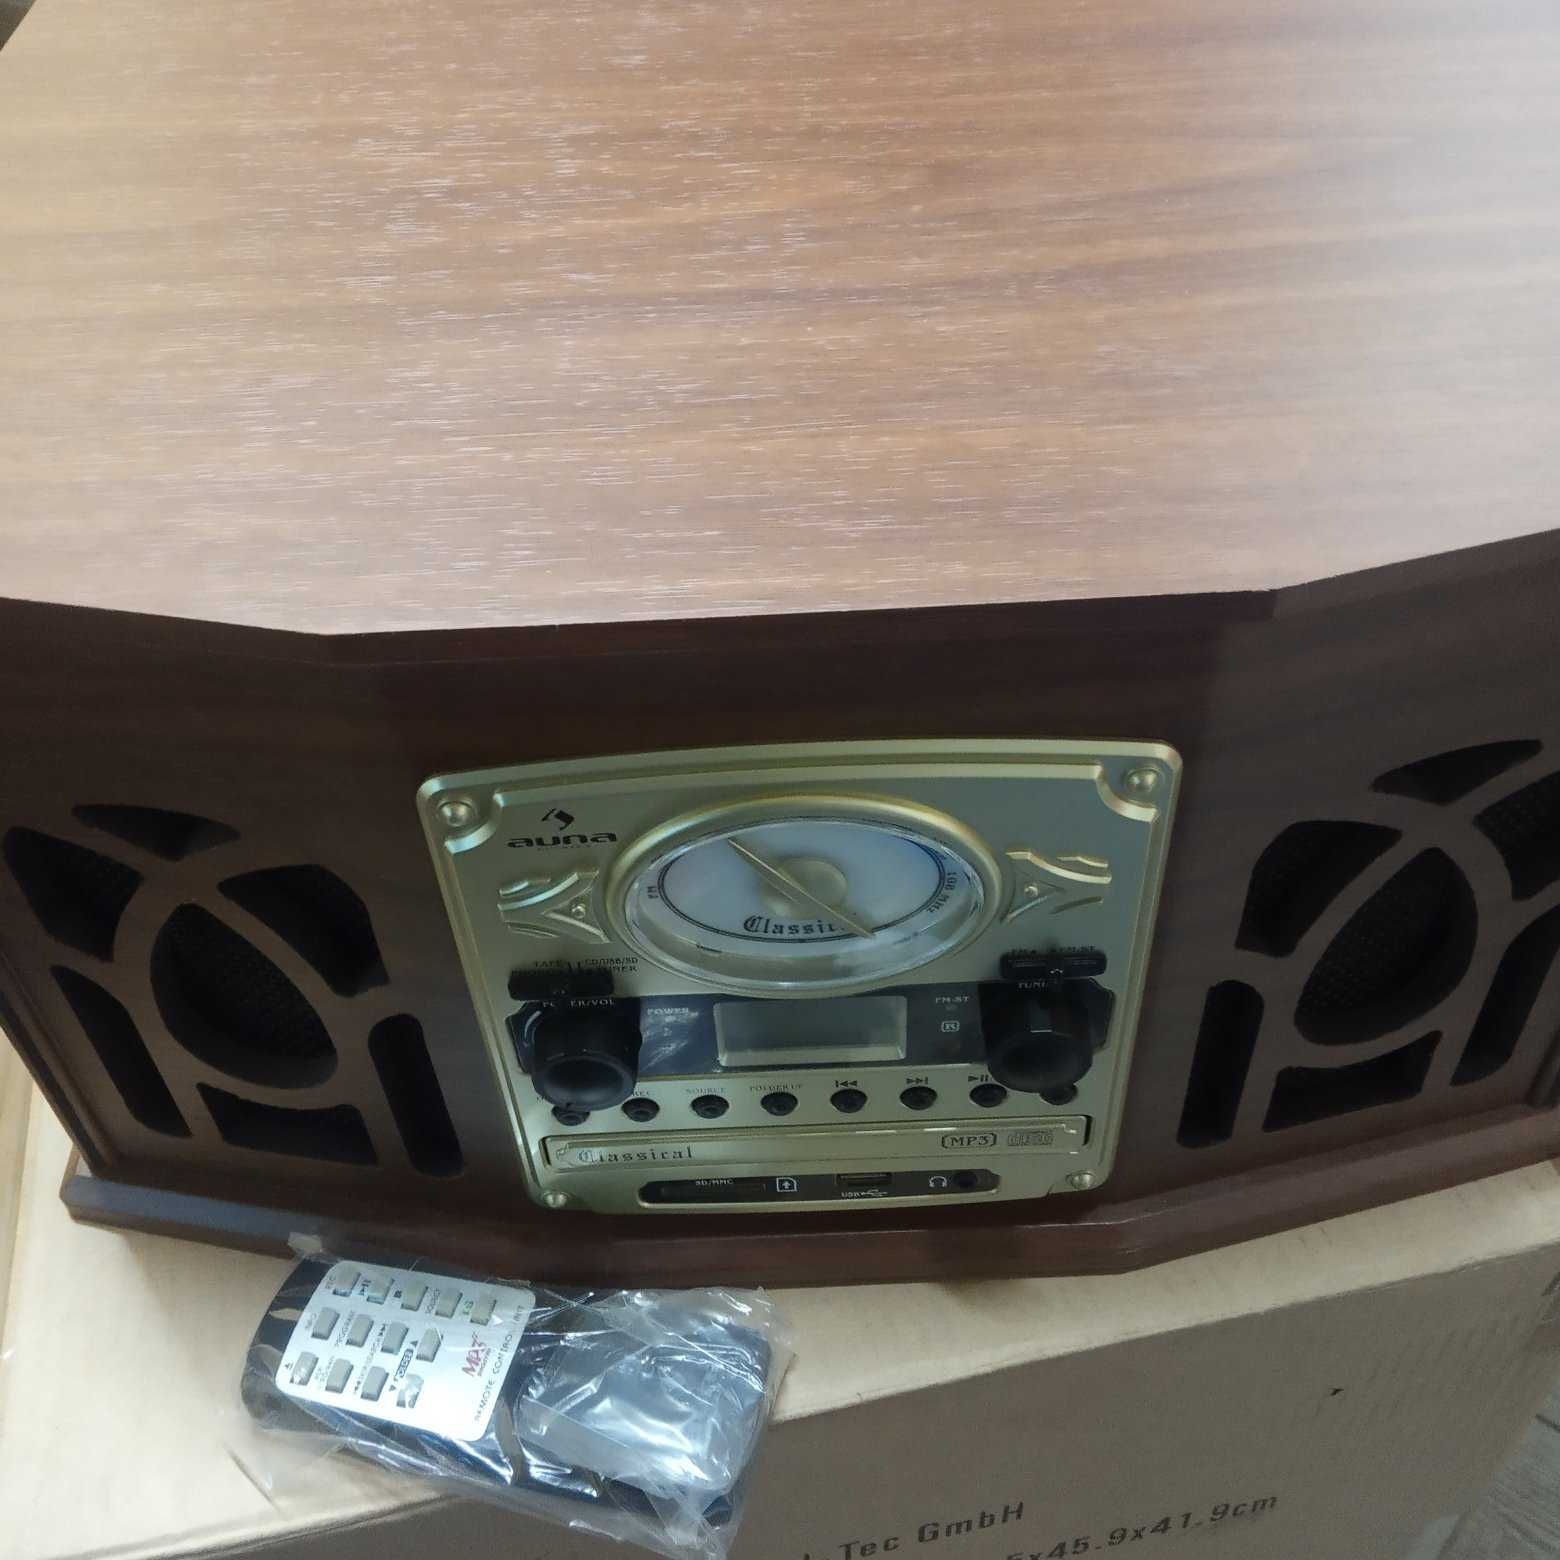 NR-620, gramofon, zestaw,usb,cd,fm,kaseta